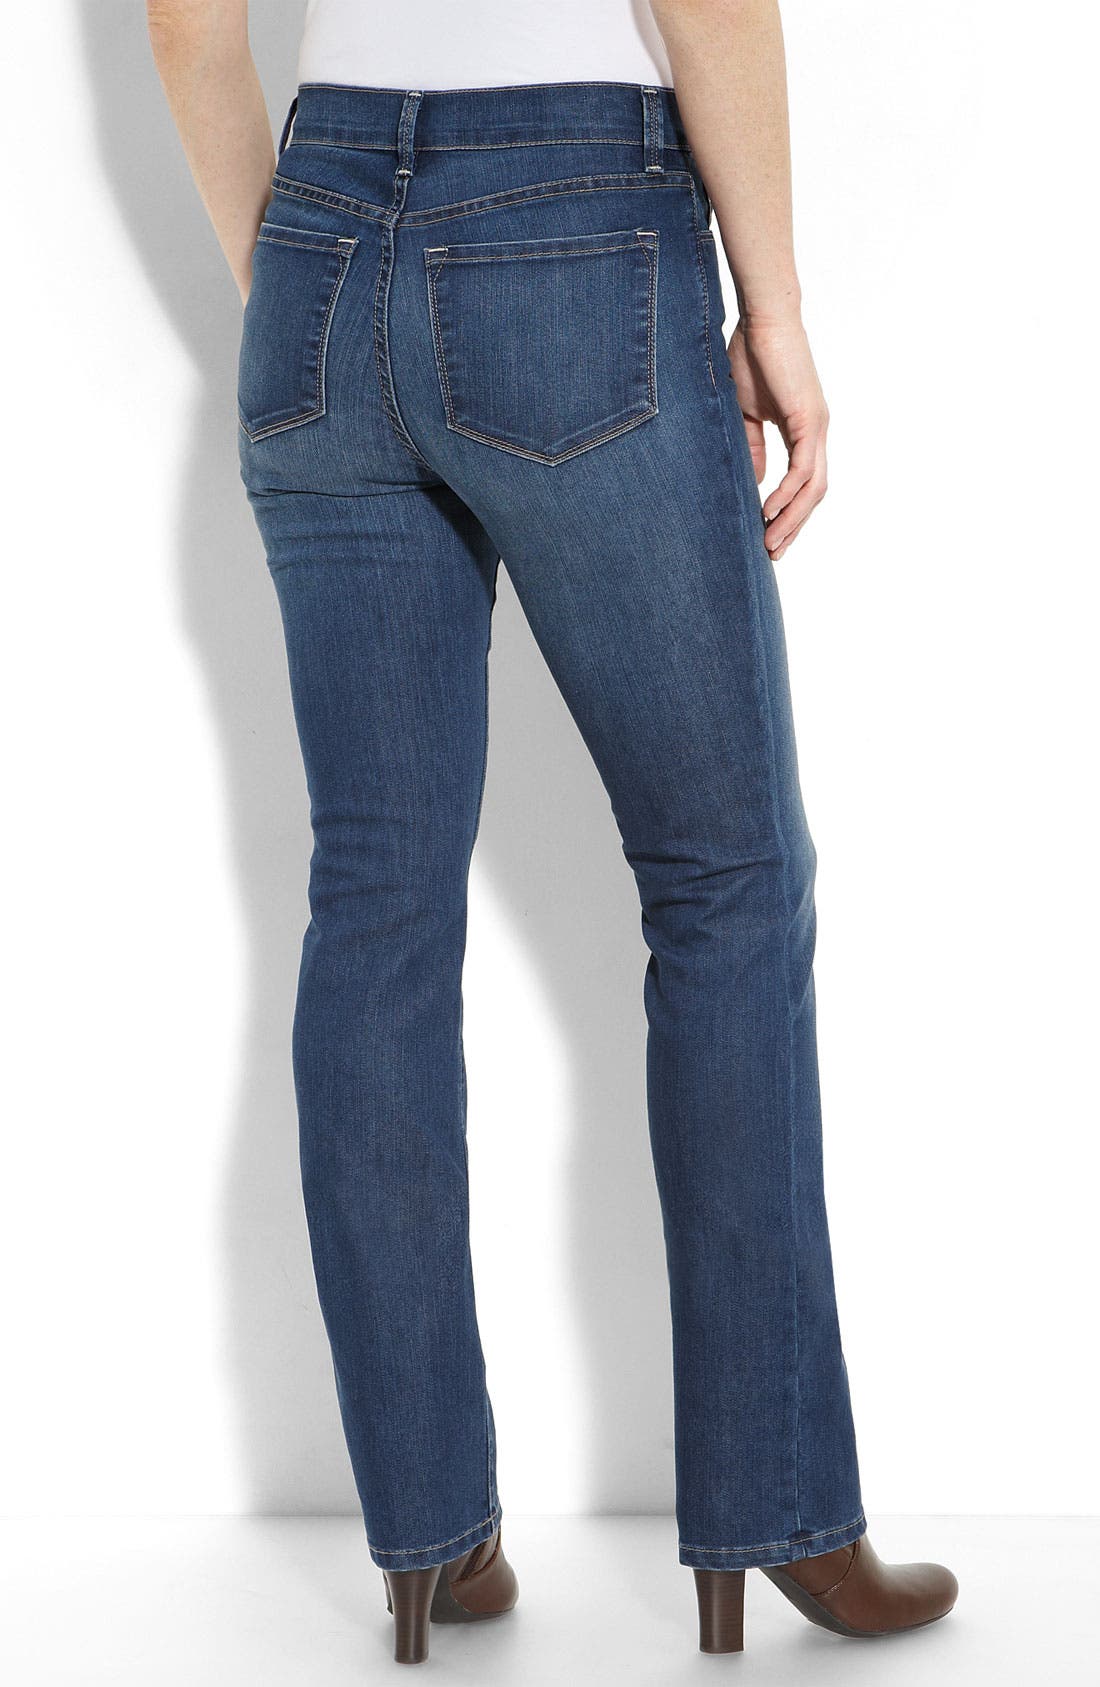 jeans capri design